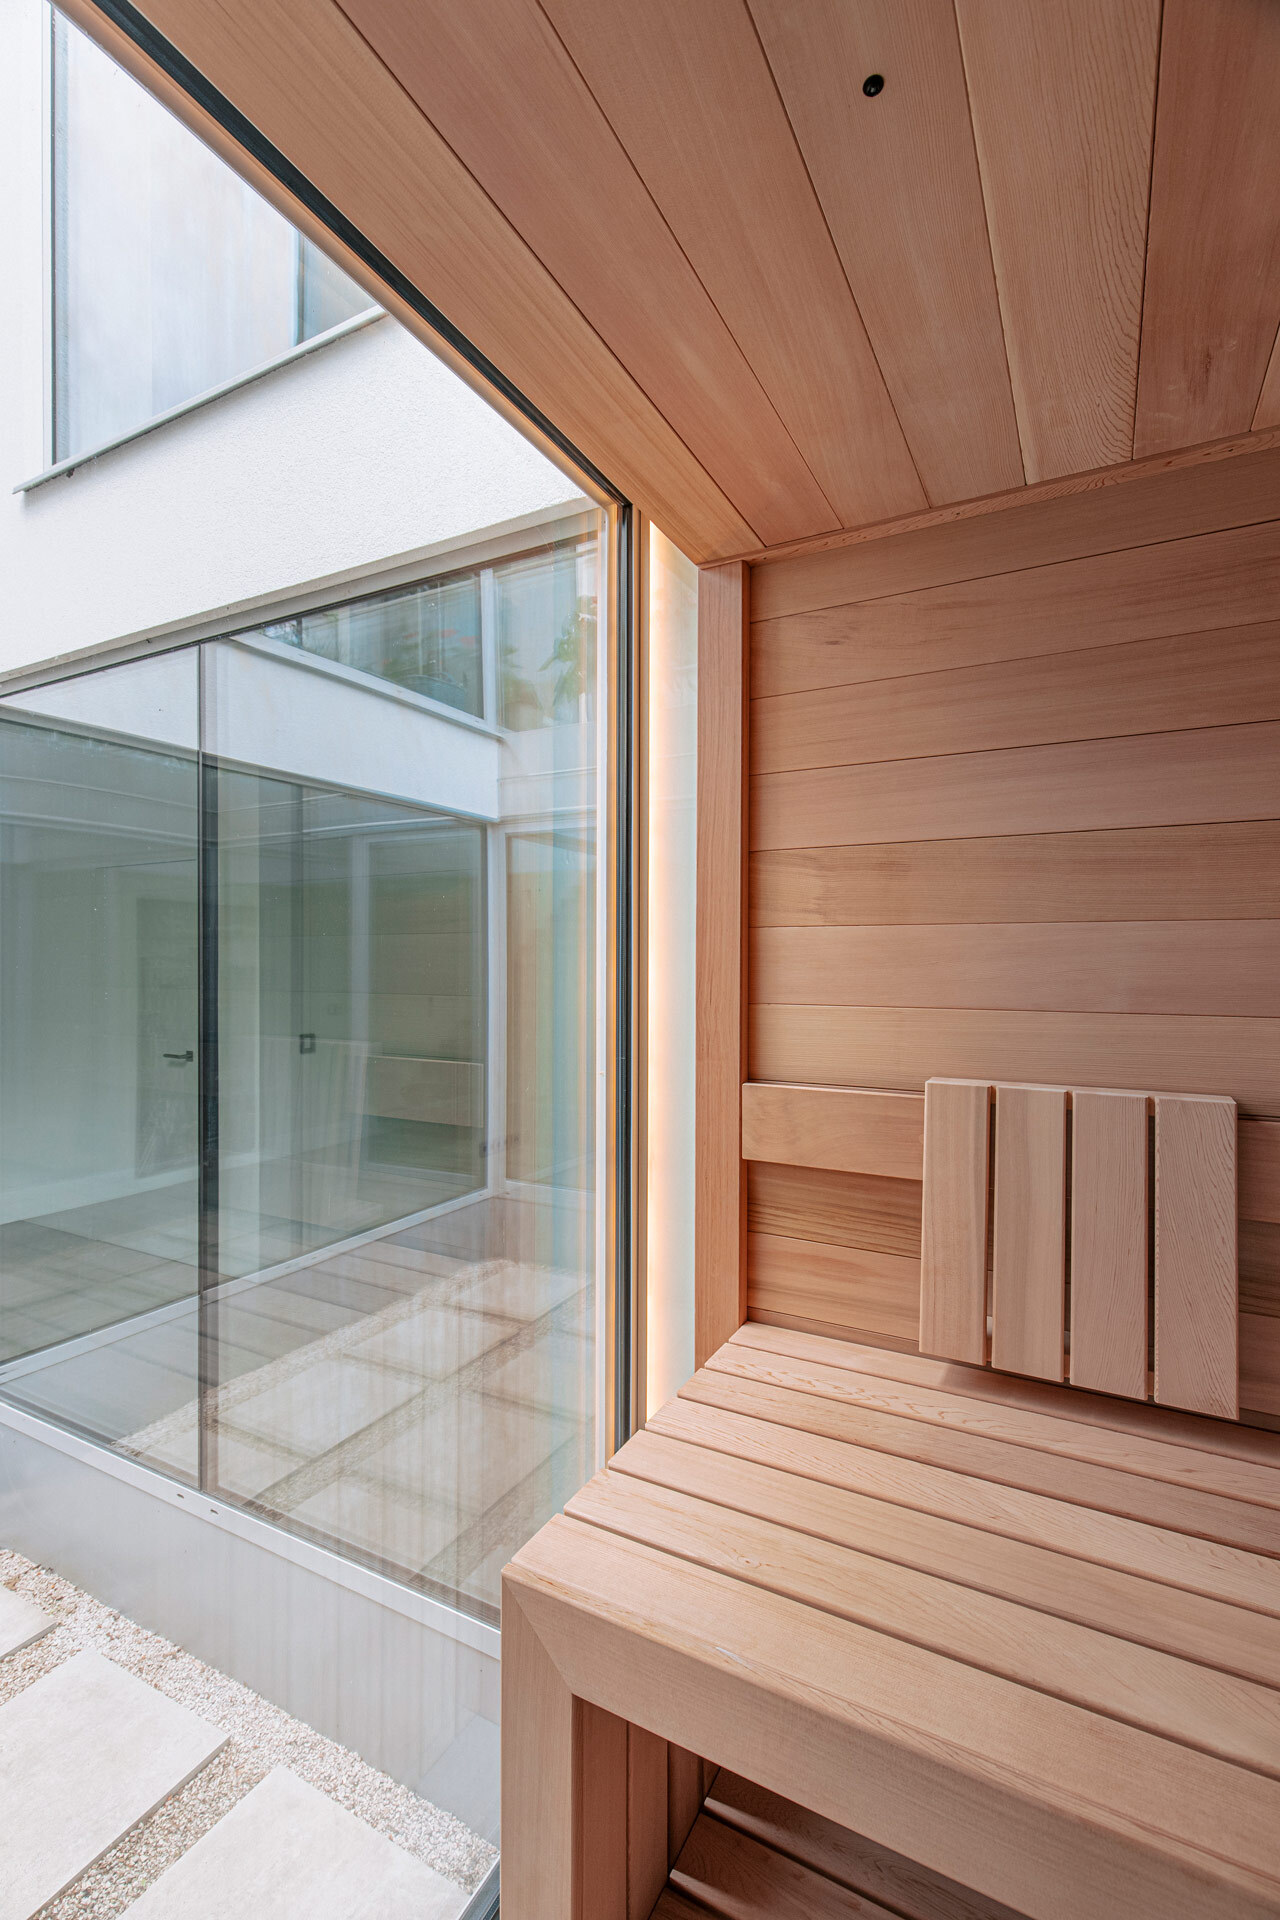 Sauna von Innen aus rötlich anmutendem Zedernholz ohne Maserung, mit Lichtleiste und Anbindung an ein vollverglastes Atrium.